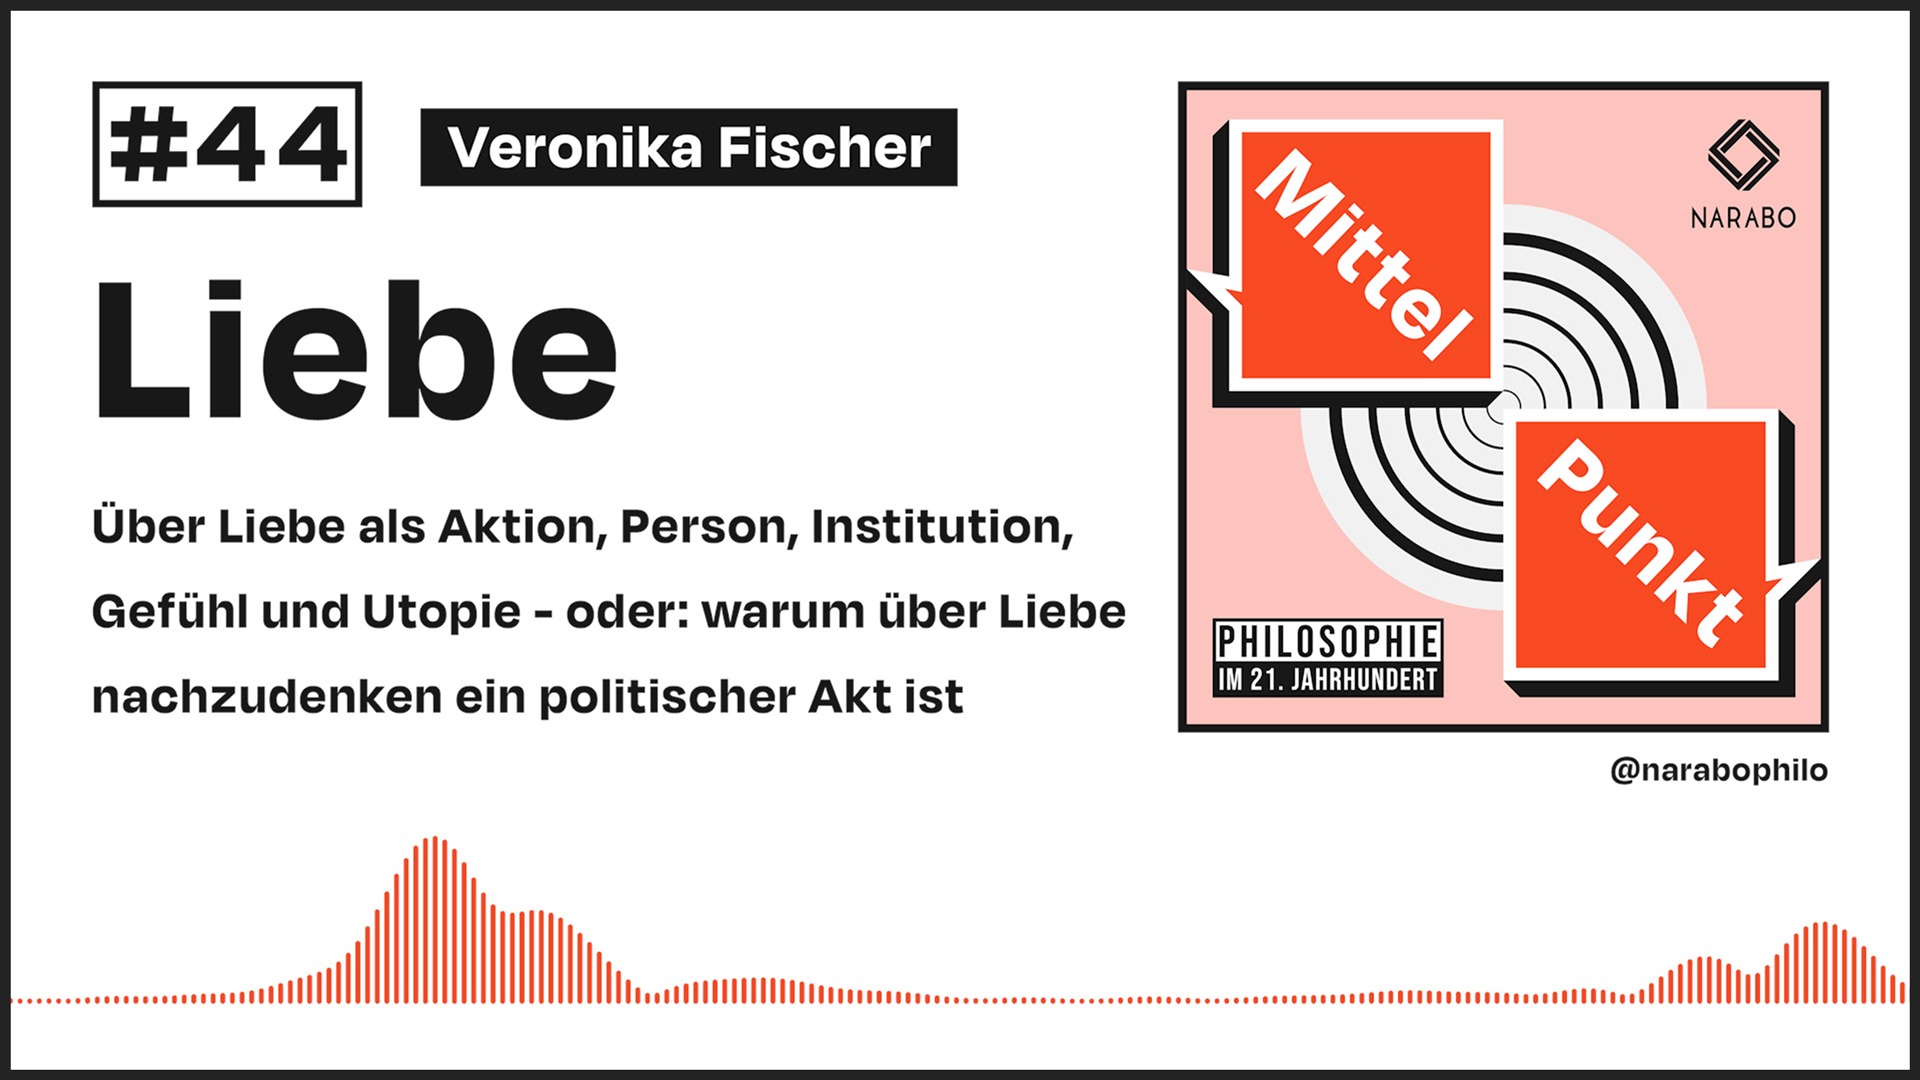 Fischer - Liebe - Narabo Podcast Philosophie im 21. Jahrhundert